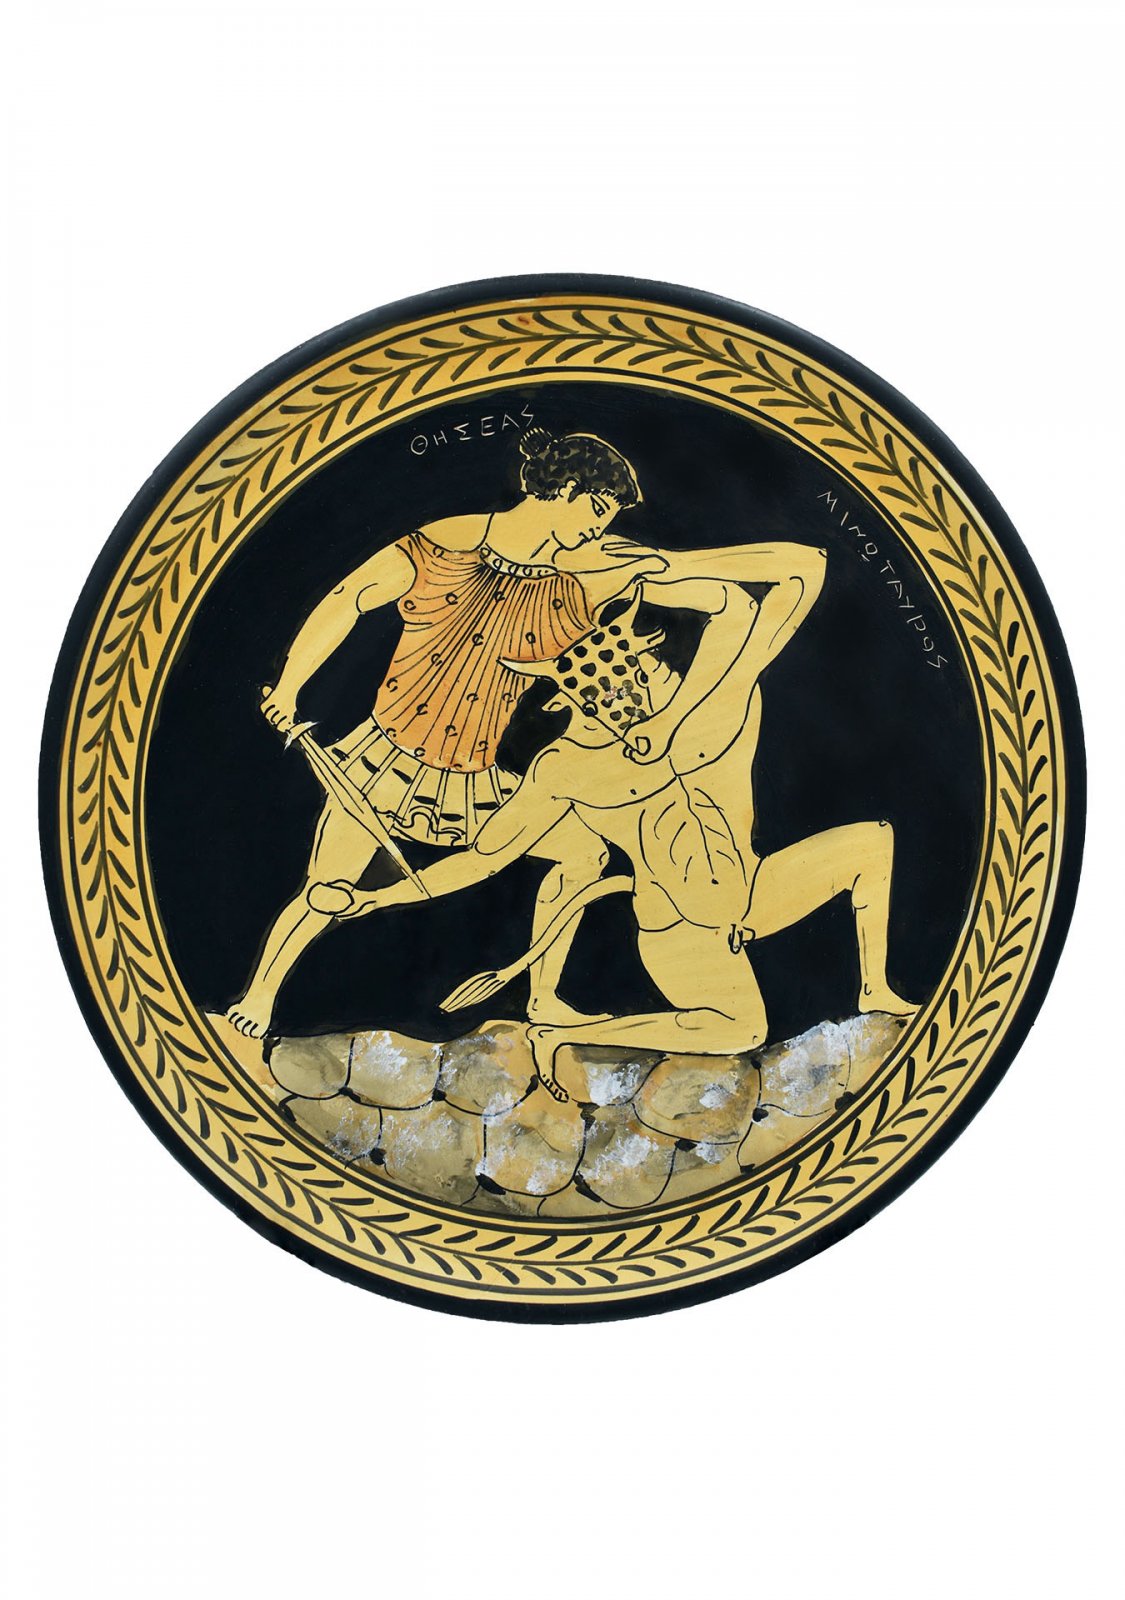 Greek ceramic plate depicting Theseus and Minotaur (28cm)